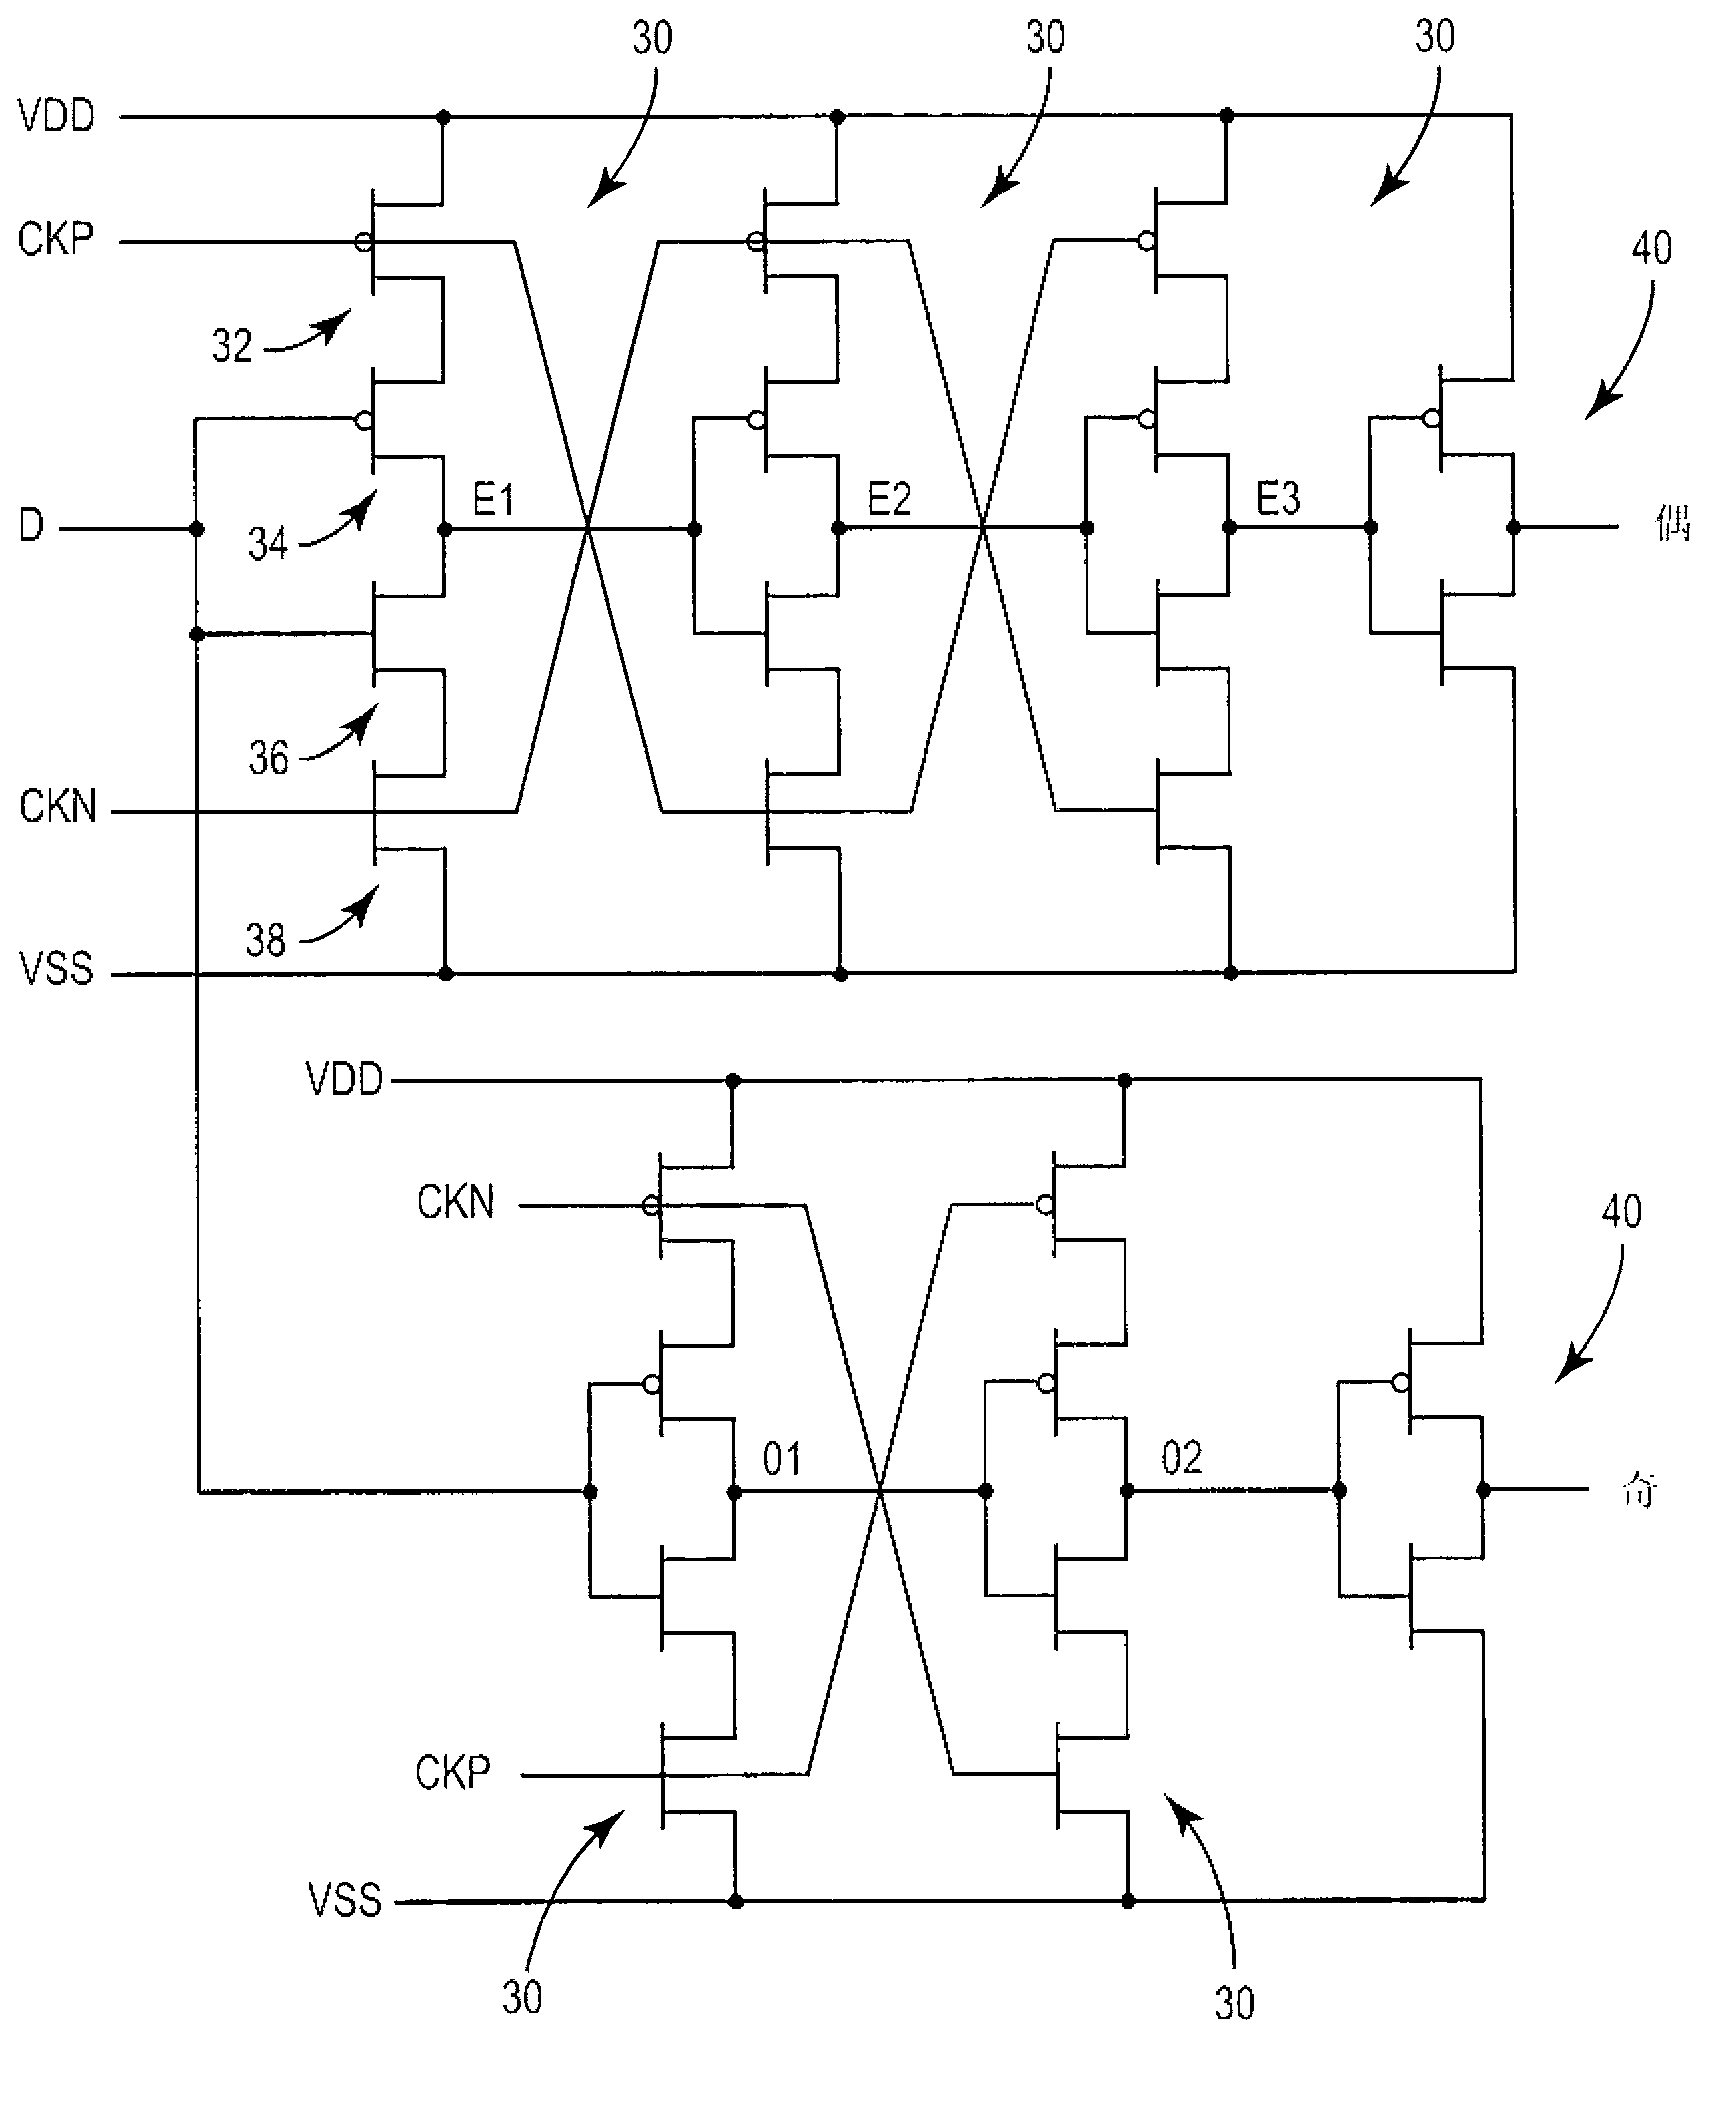 Sampler circuit